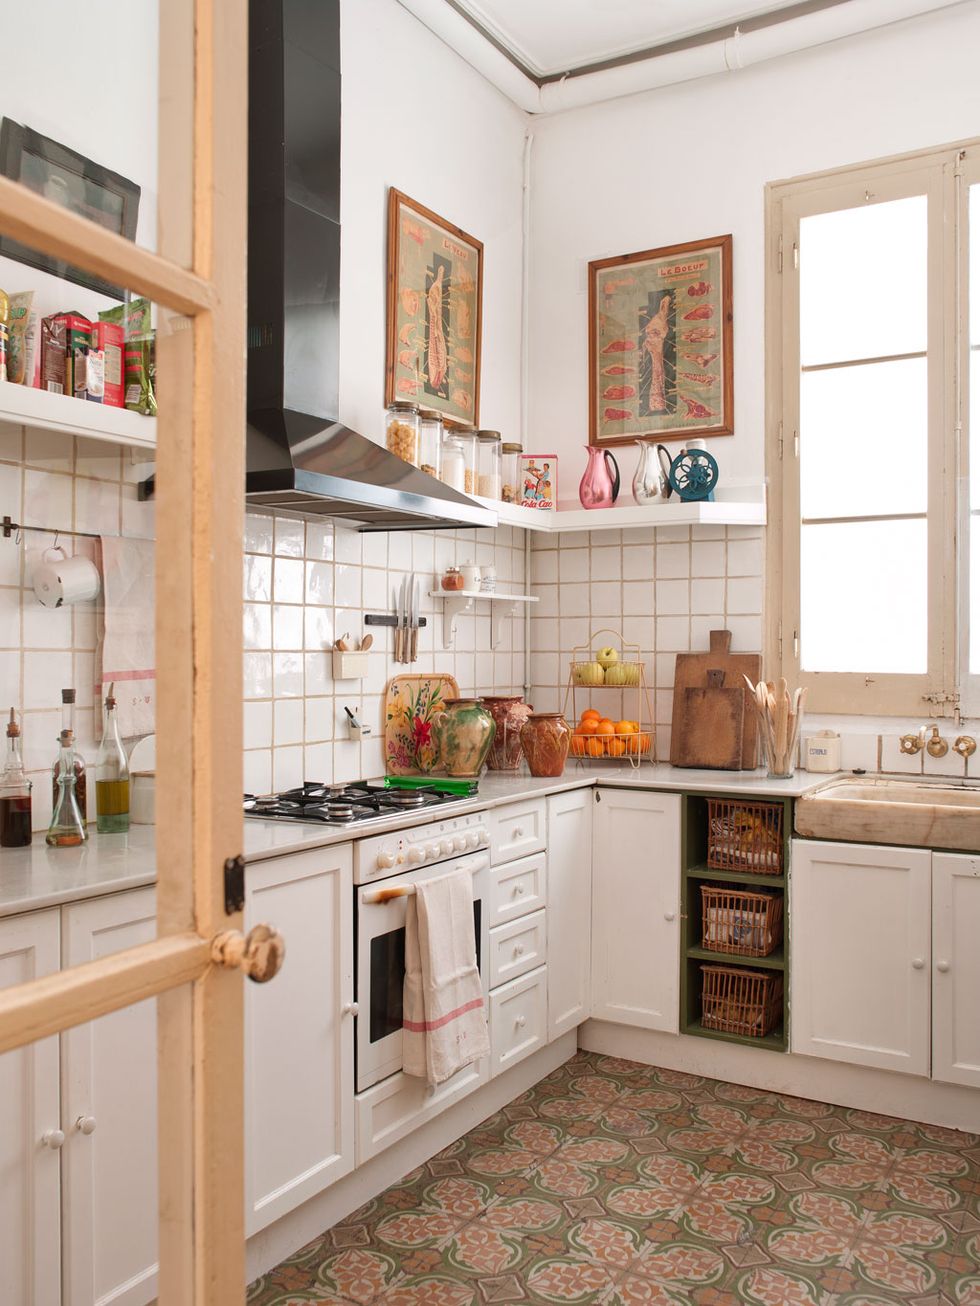 Cocinas de madera de estilo rústico, modernas y funcionales